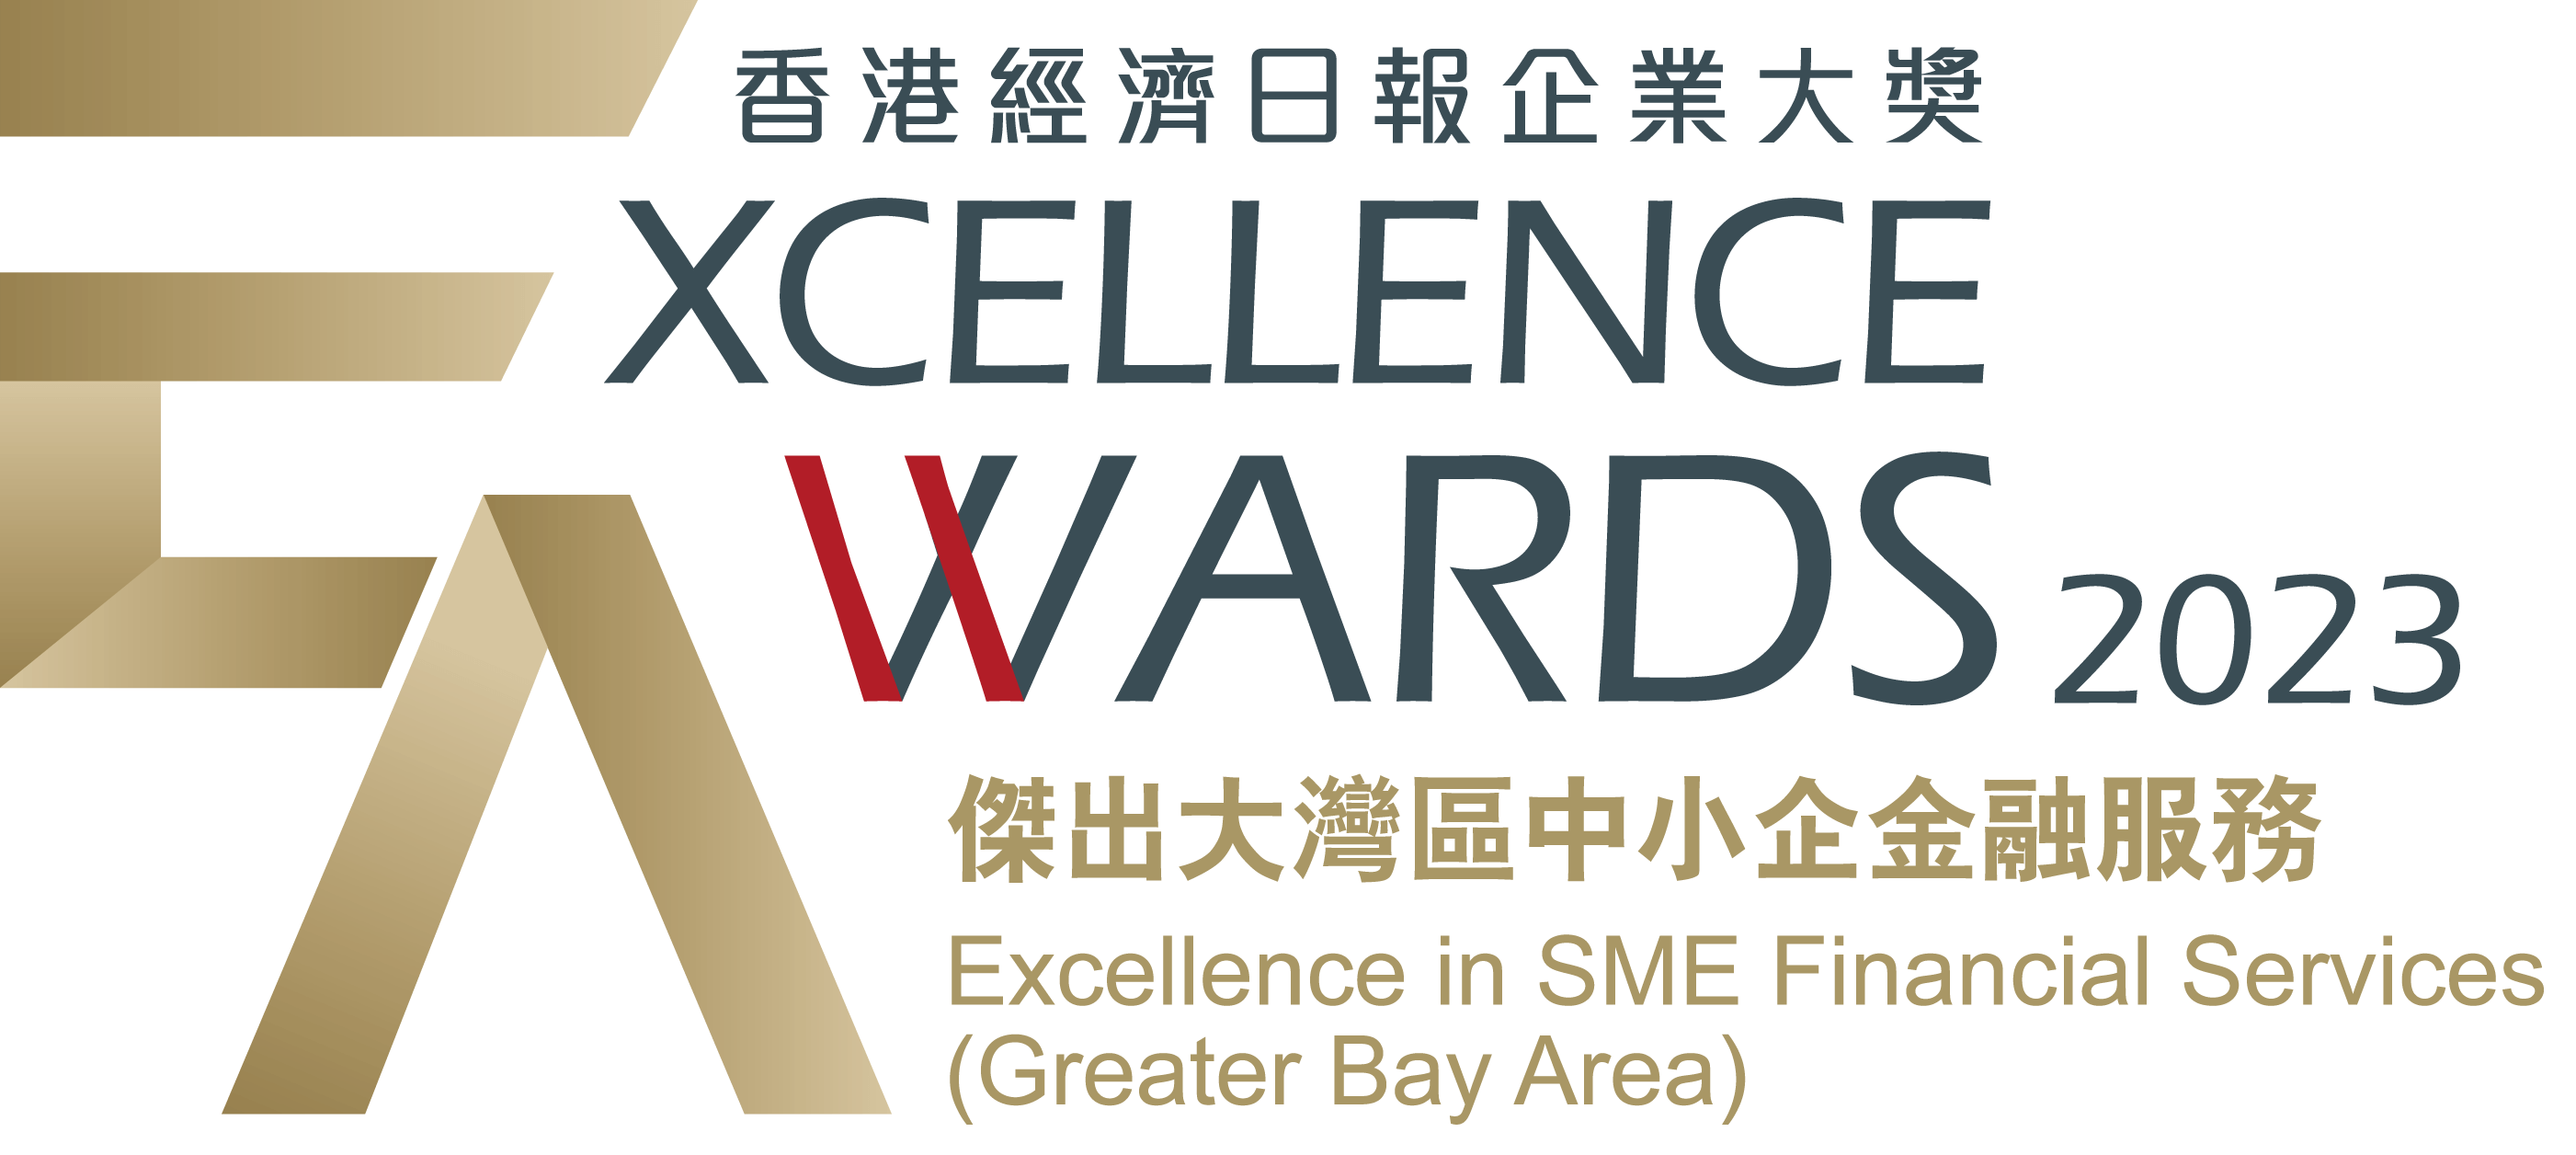 香港经济日报企业大奖2023<br/>「杰出大湾区中小企金融服务」